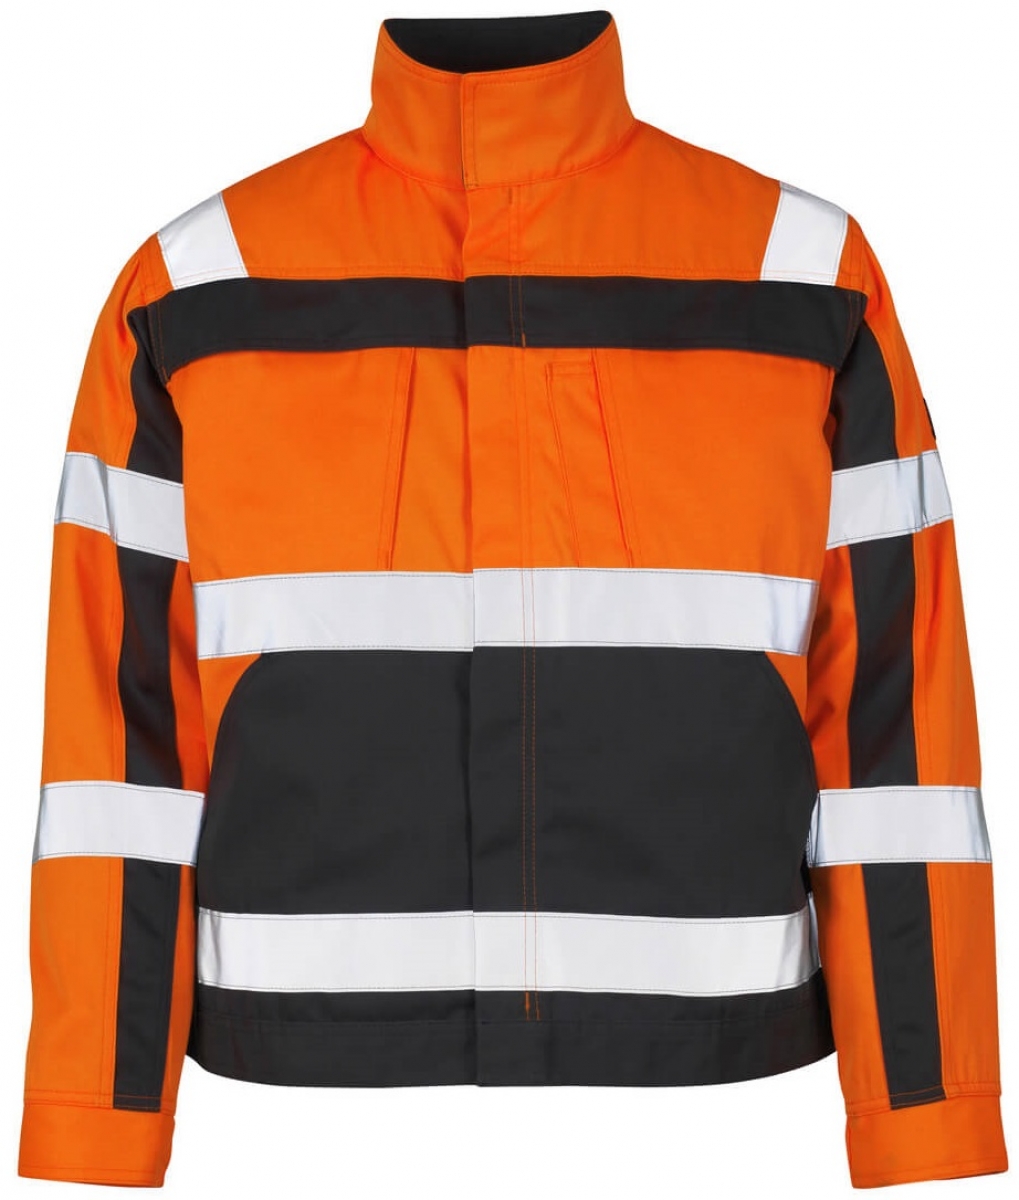 MASCOT-Workwear, Warnschutz-Jacke, Cameta, 290 g/m, orange/anthrazit